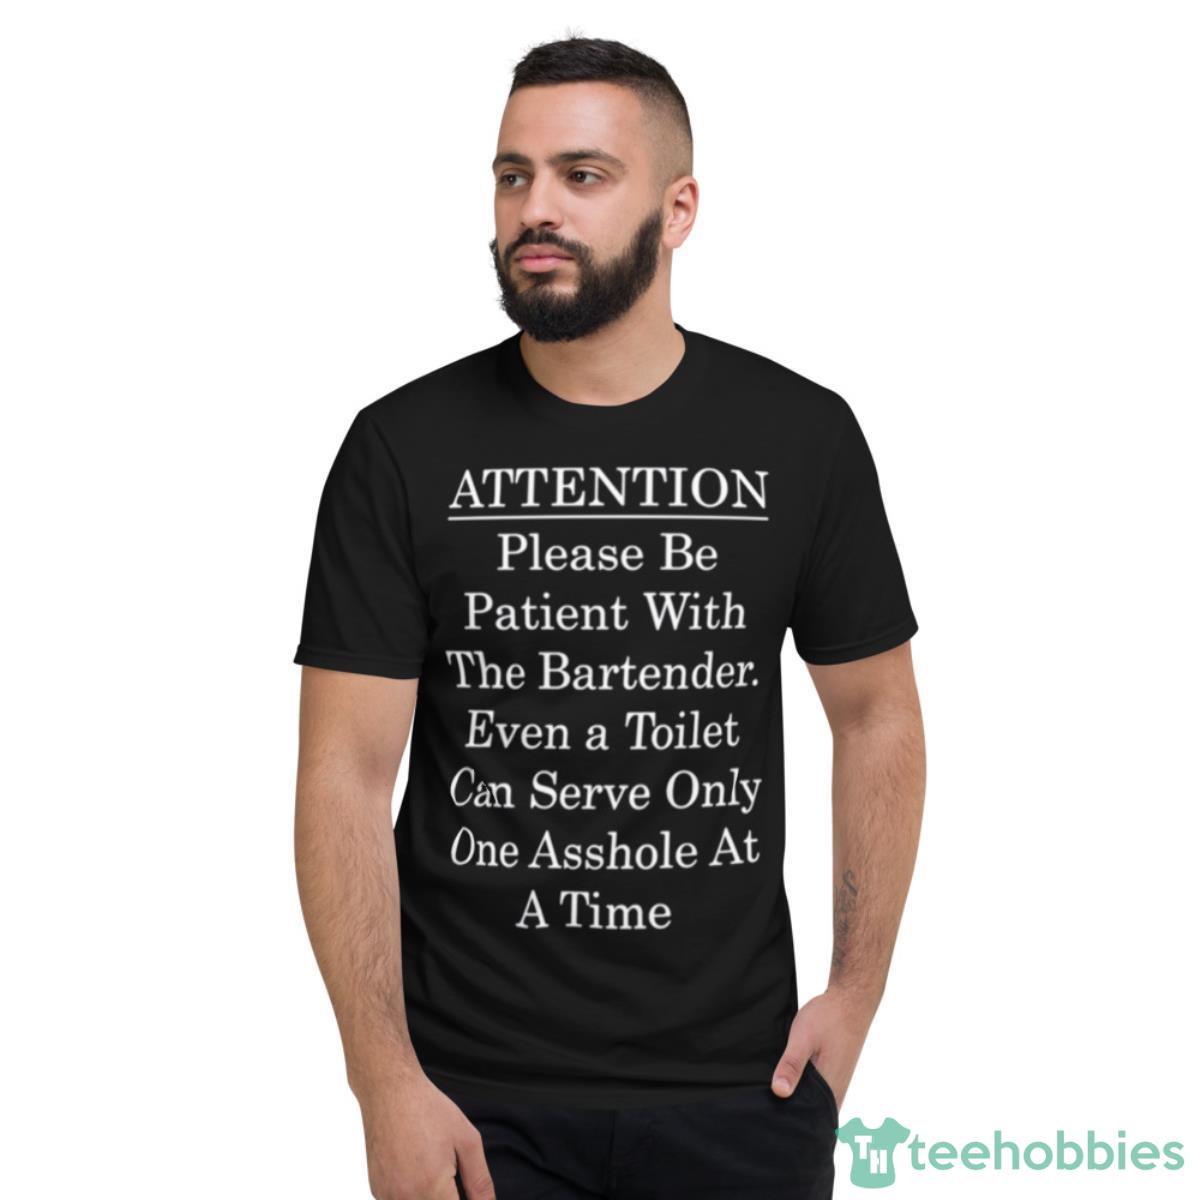 Attention Bartender Be Patient Shirt - Short Sleeve T-Shirt